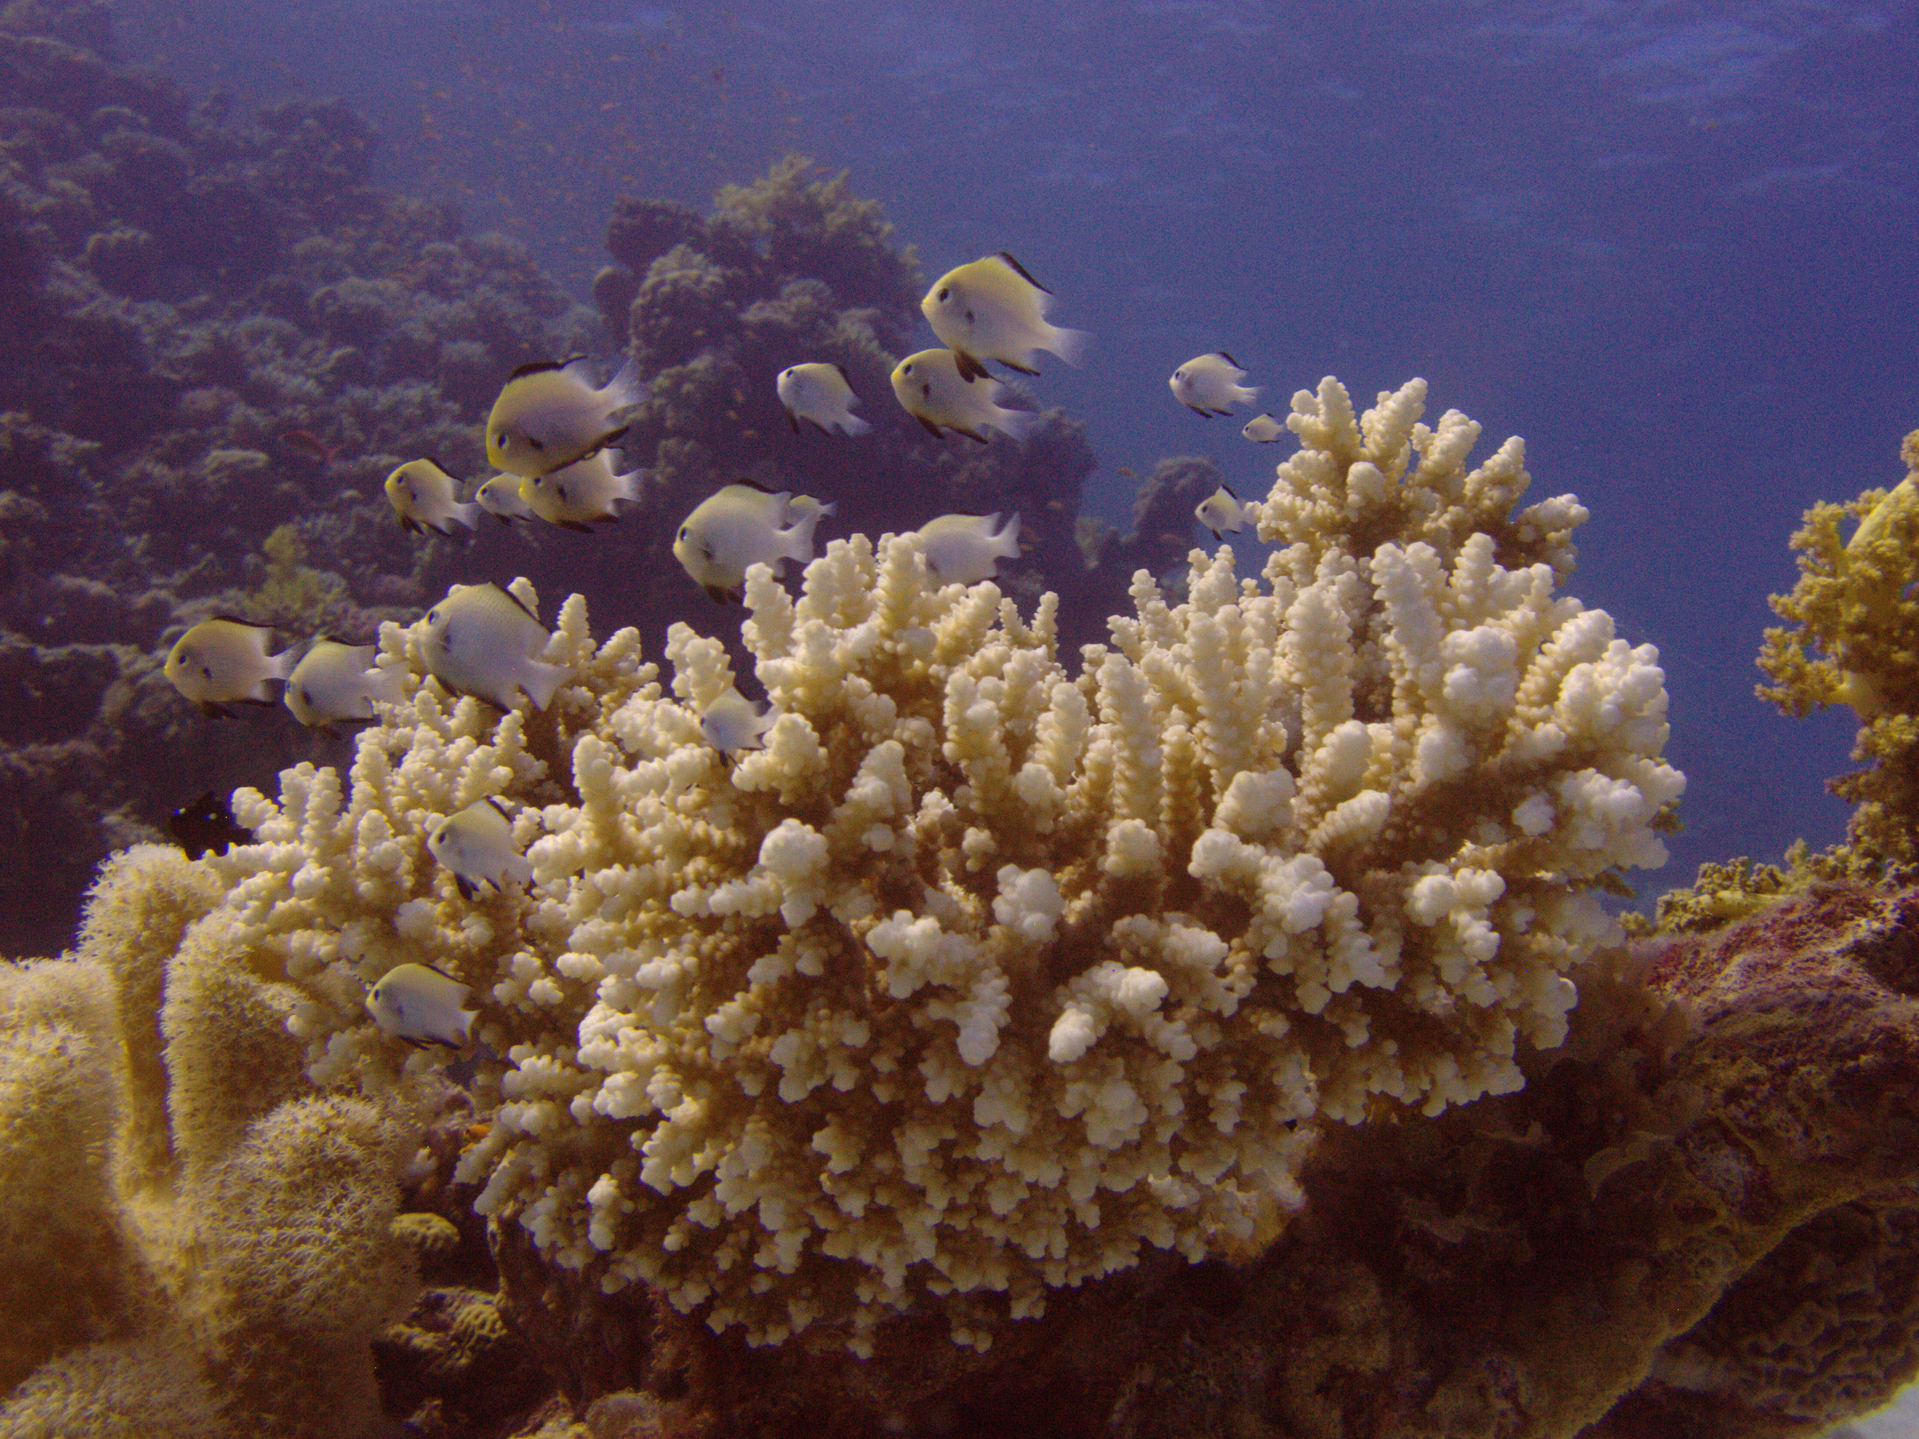 W galerii znajdują się fotografie przedstawiające bogactwo życia na rafie koralowej. Fotografia przedstawia zbliżenie kolonii korala madreporowego w morzu. Jest beżowo – biały, mocno rozgałęziony. Obok znajdują się inne koralowce. Korale madreporowe tworzą rafę. Na nim pływa stadko białawych rybek z czarnymi płetwami.